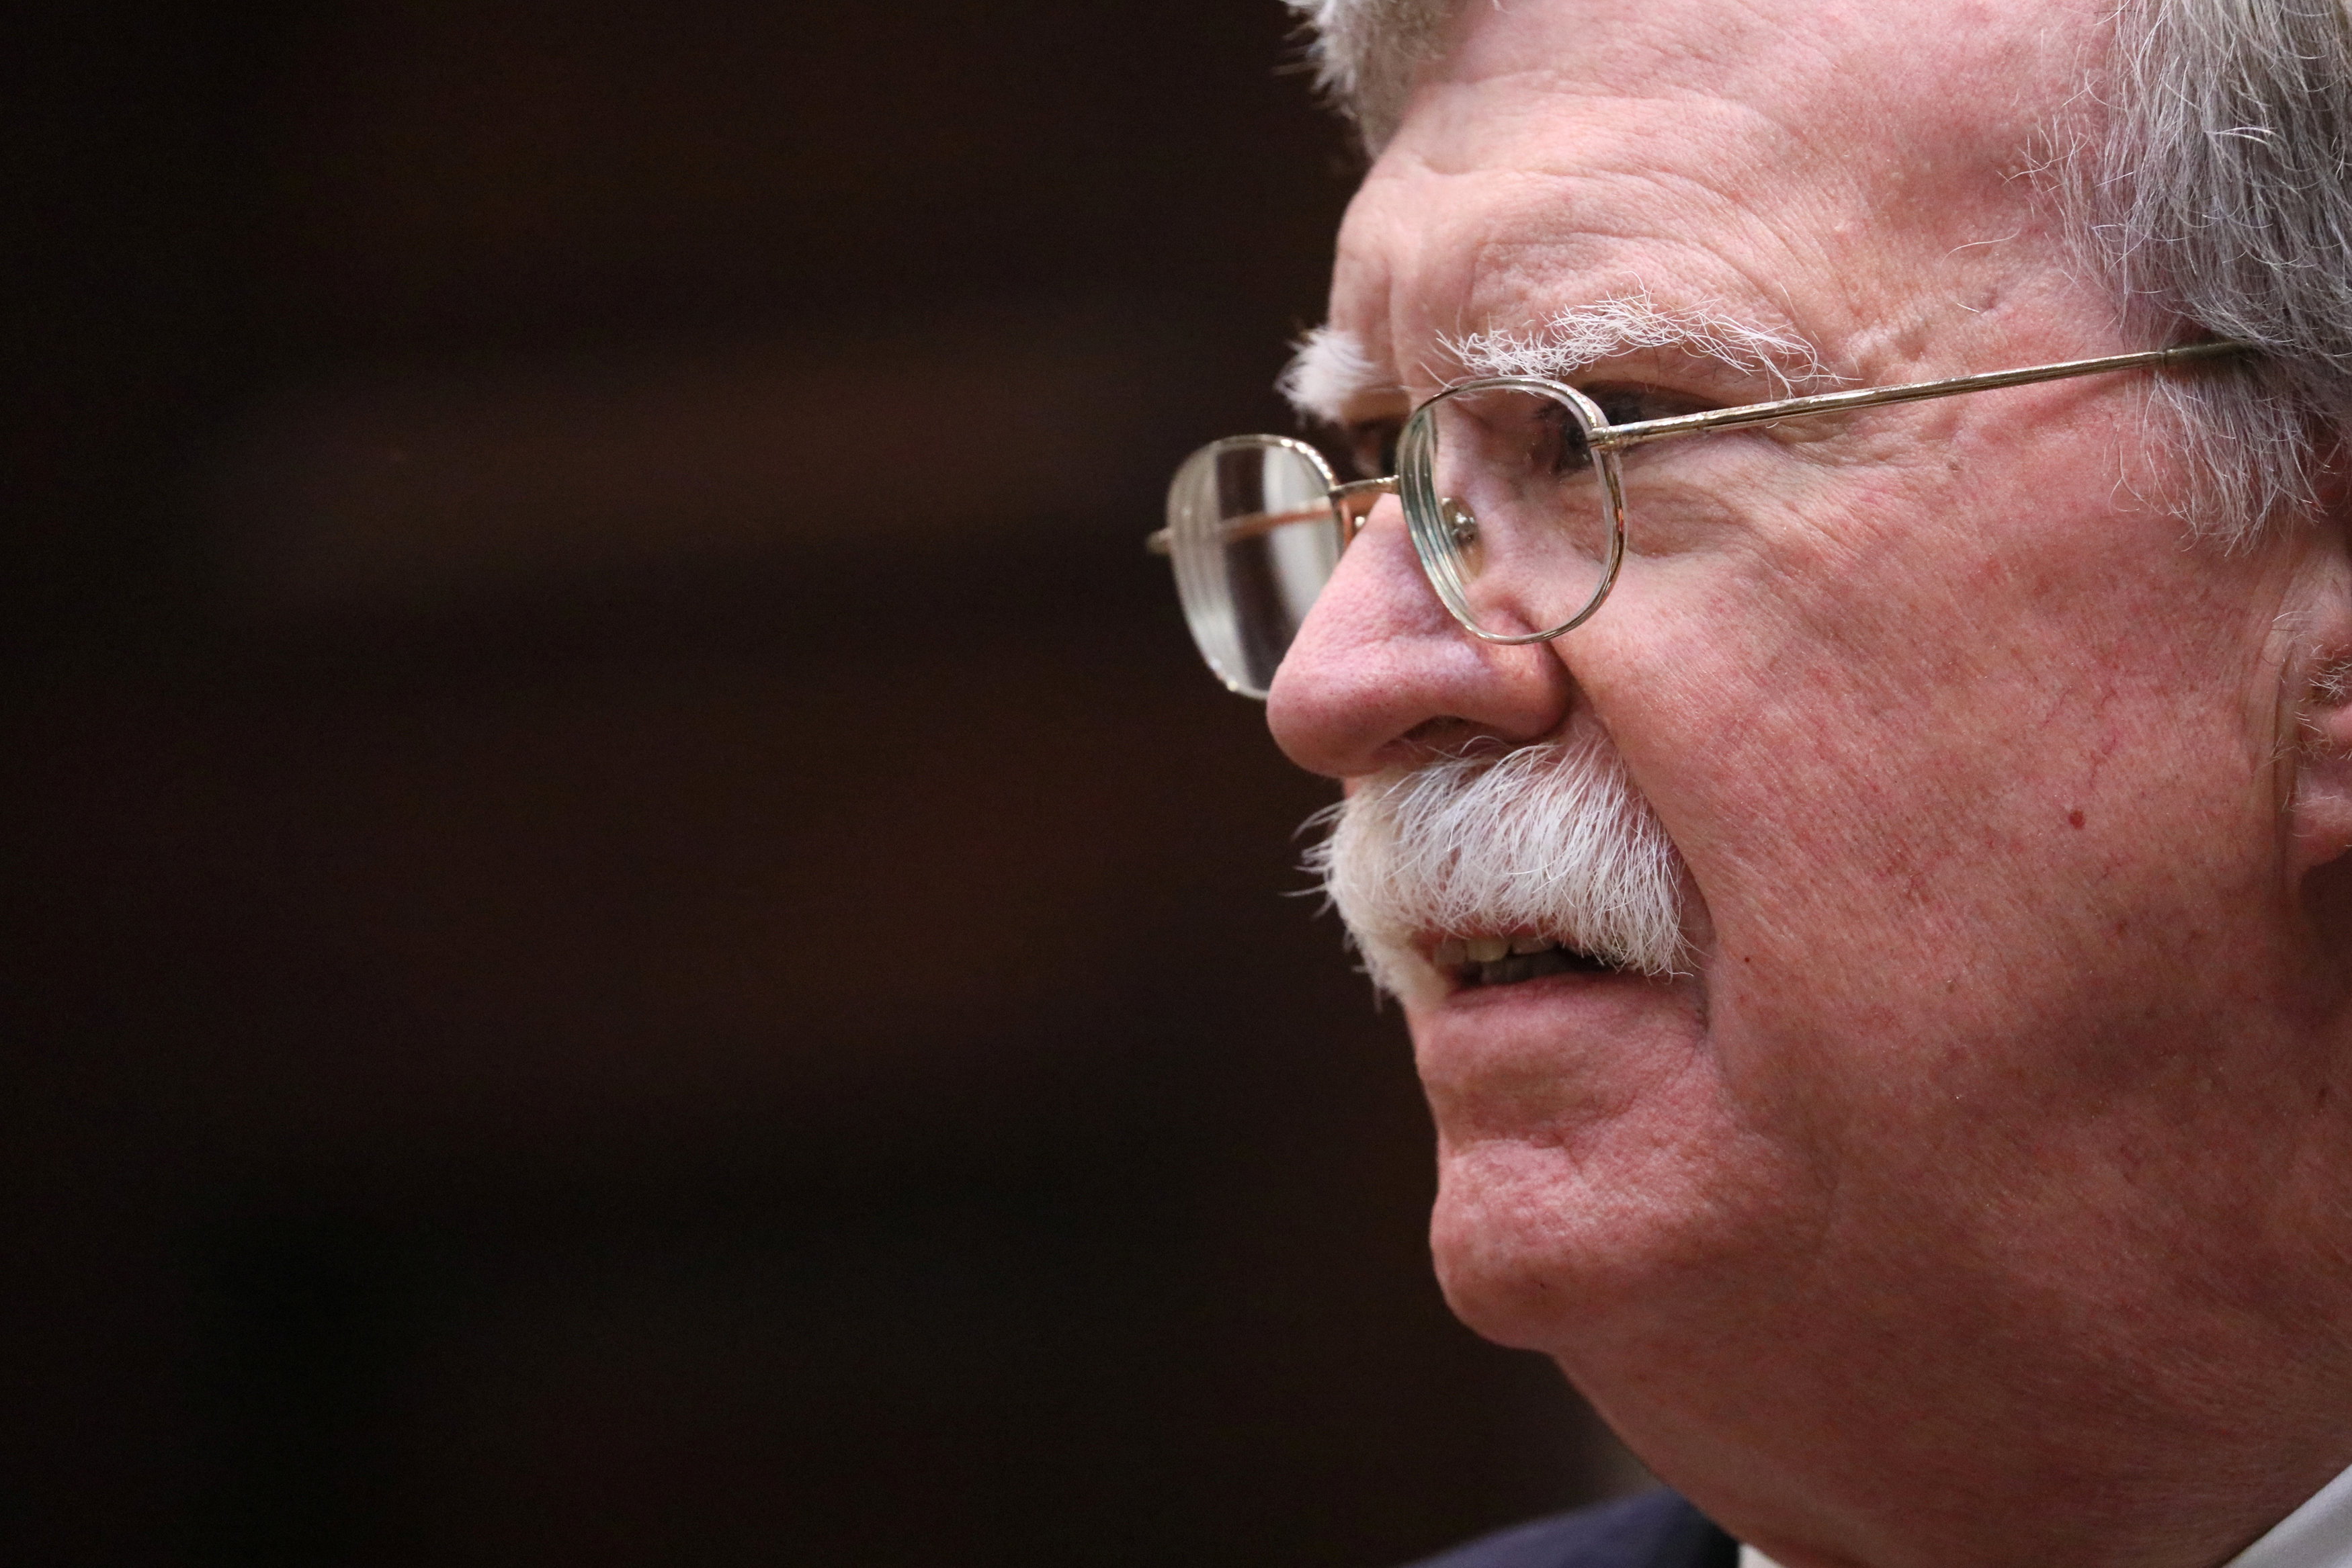 Bolton continúa presionando al régimen de Maduro para ponerle fin a la usurpación